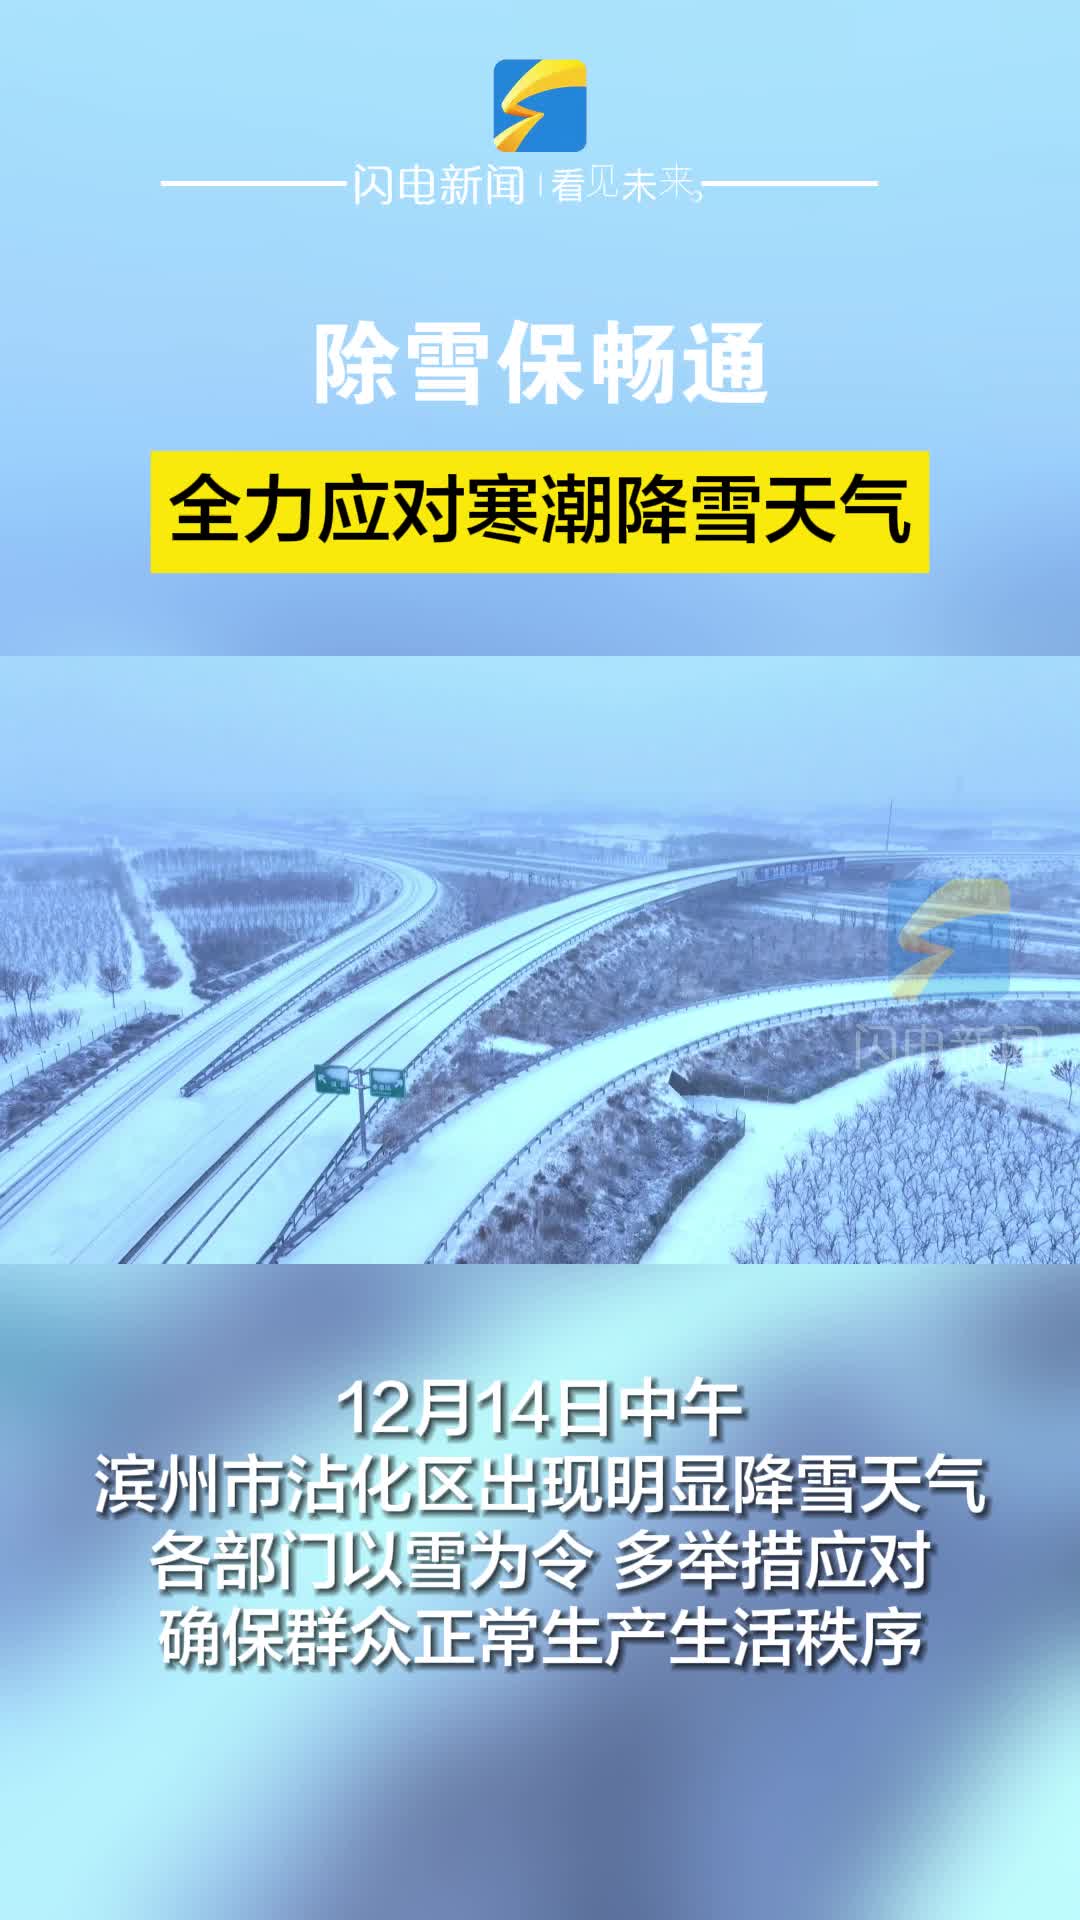 滨州沾化：除雪保畅通 全力应对寒潮降雪天气